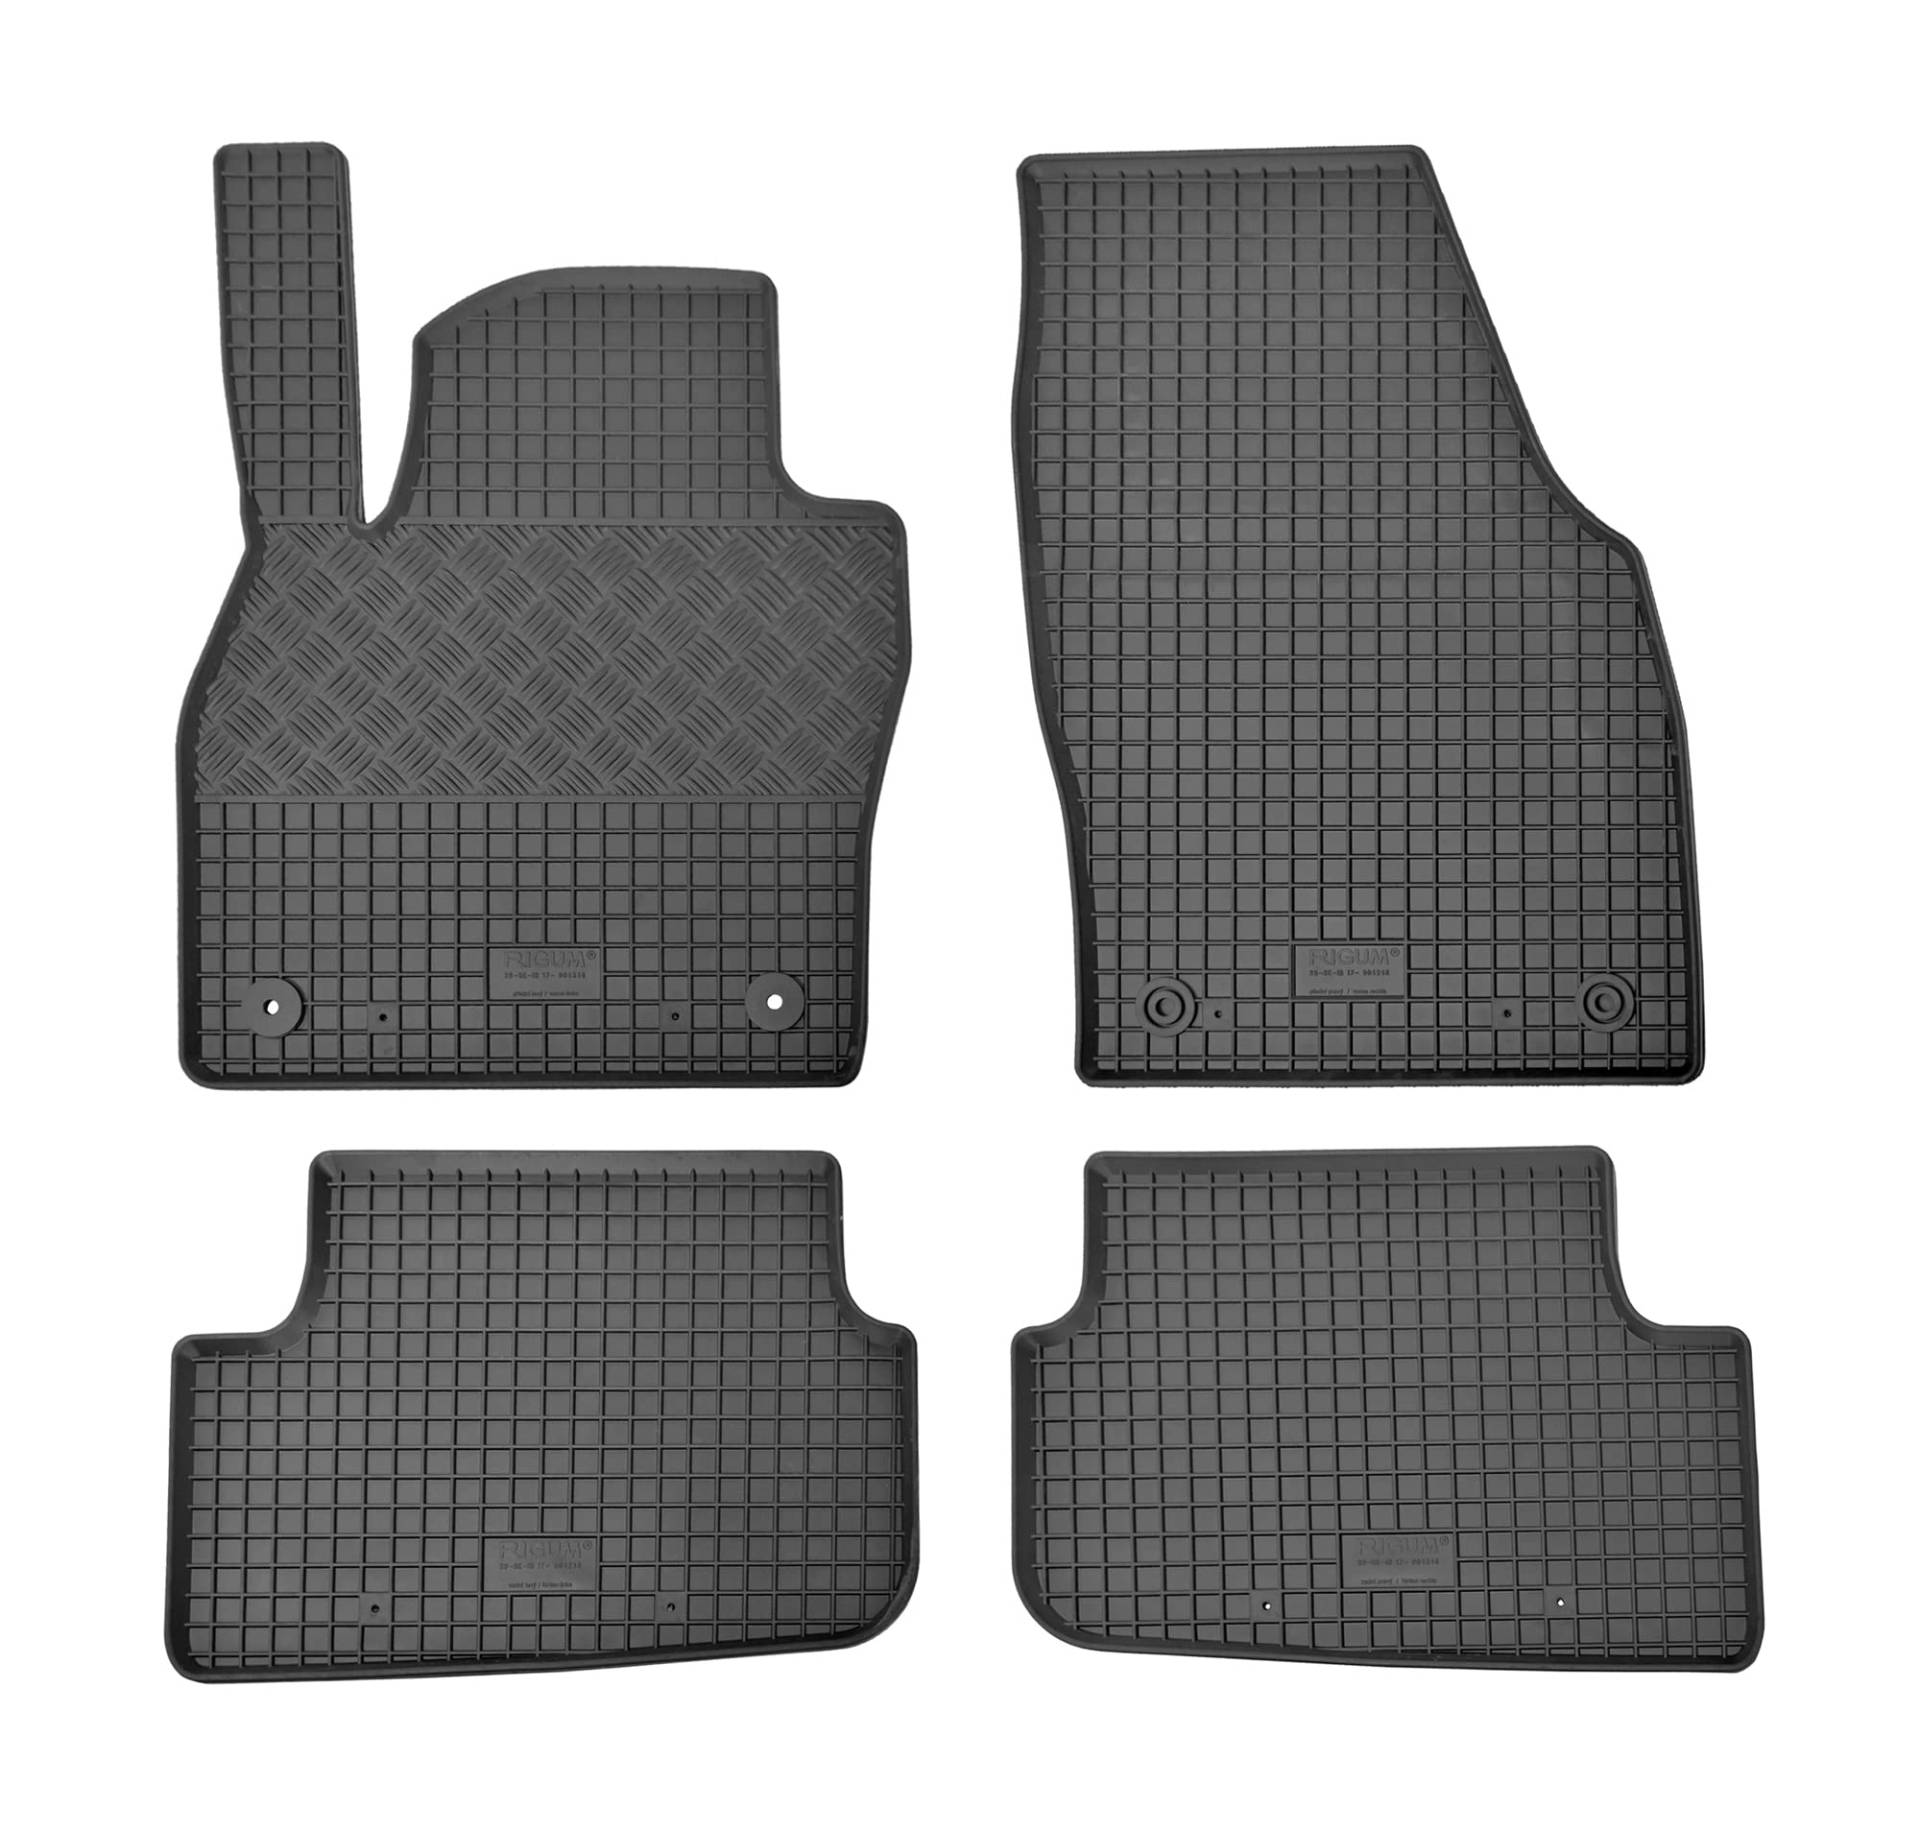 Premium Gummi Fußmatten geeignet für Seat Ibiza ab 2017 - Perfekte Passform und Schutz für Ihren Fahrzeugboden von Z4L